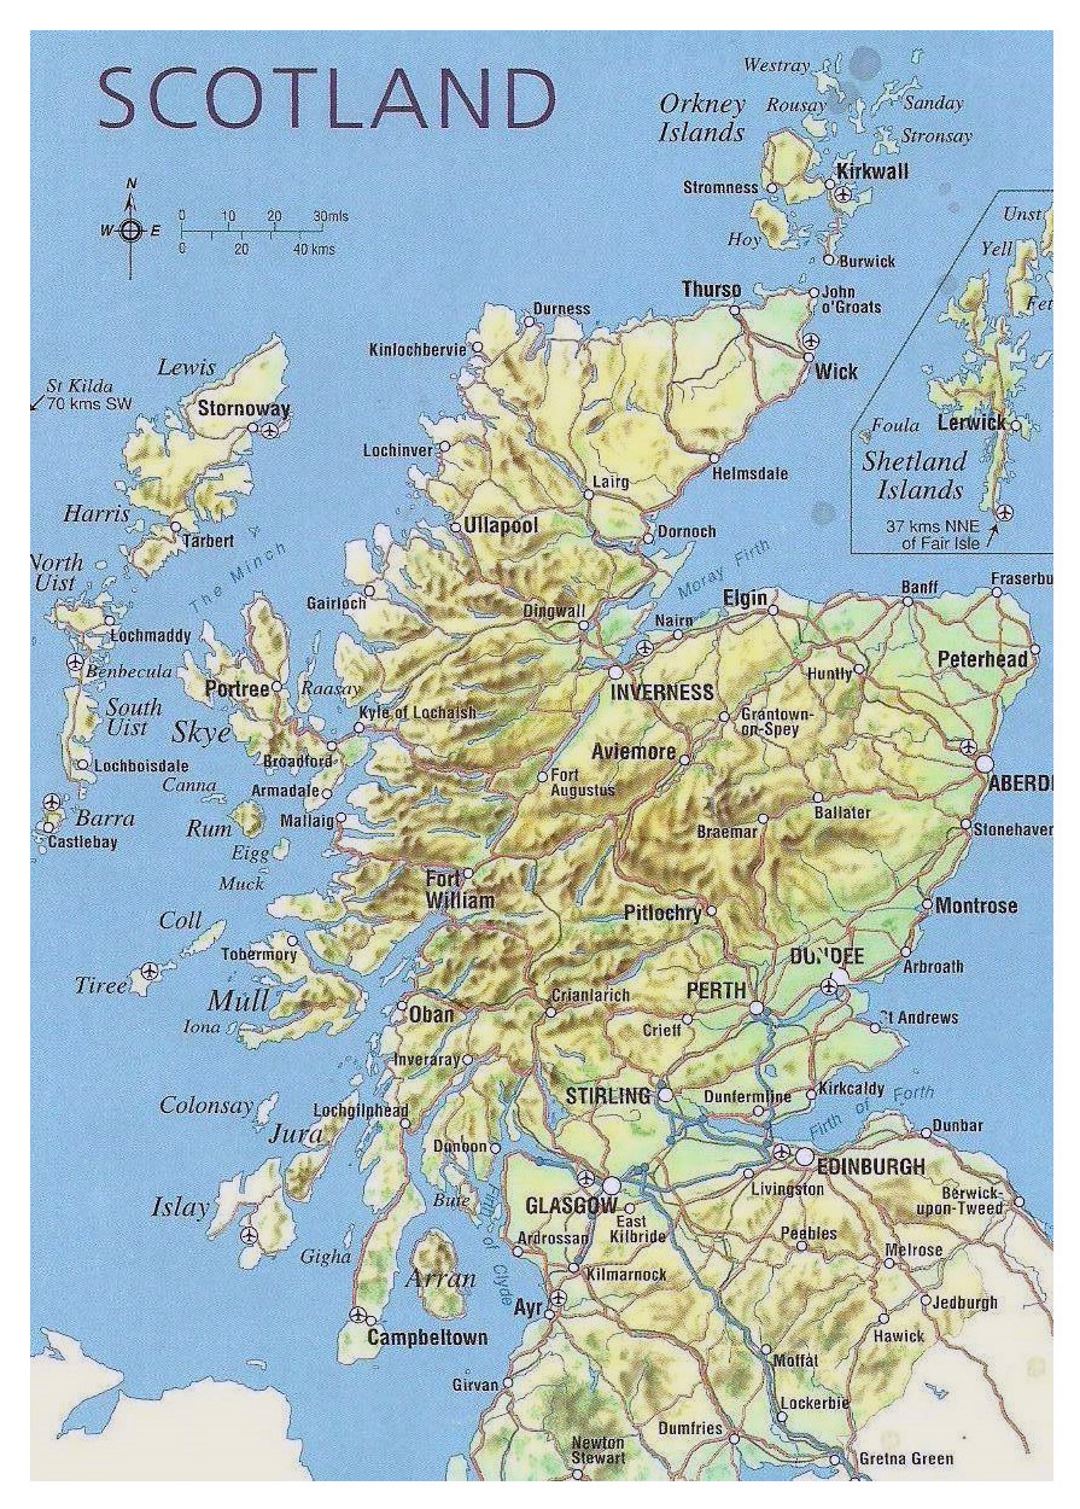 Mapa de Escocia con relieve, carreteras, principales ciudades y aeropuertos